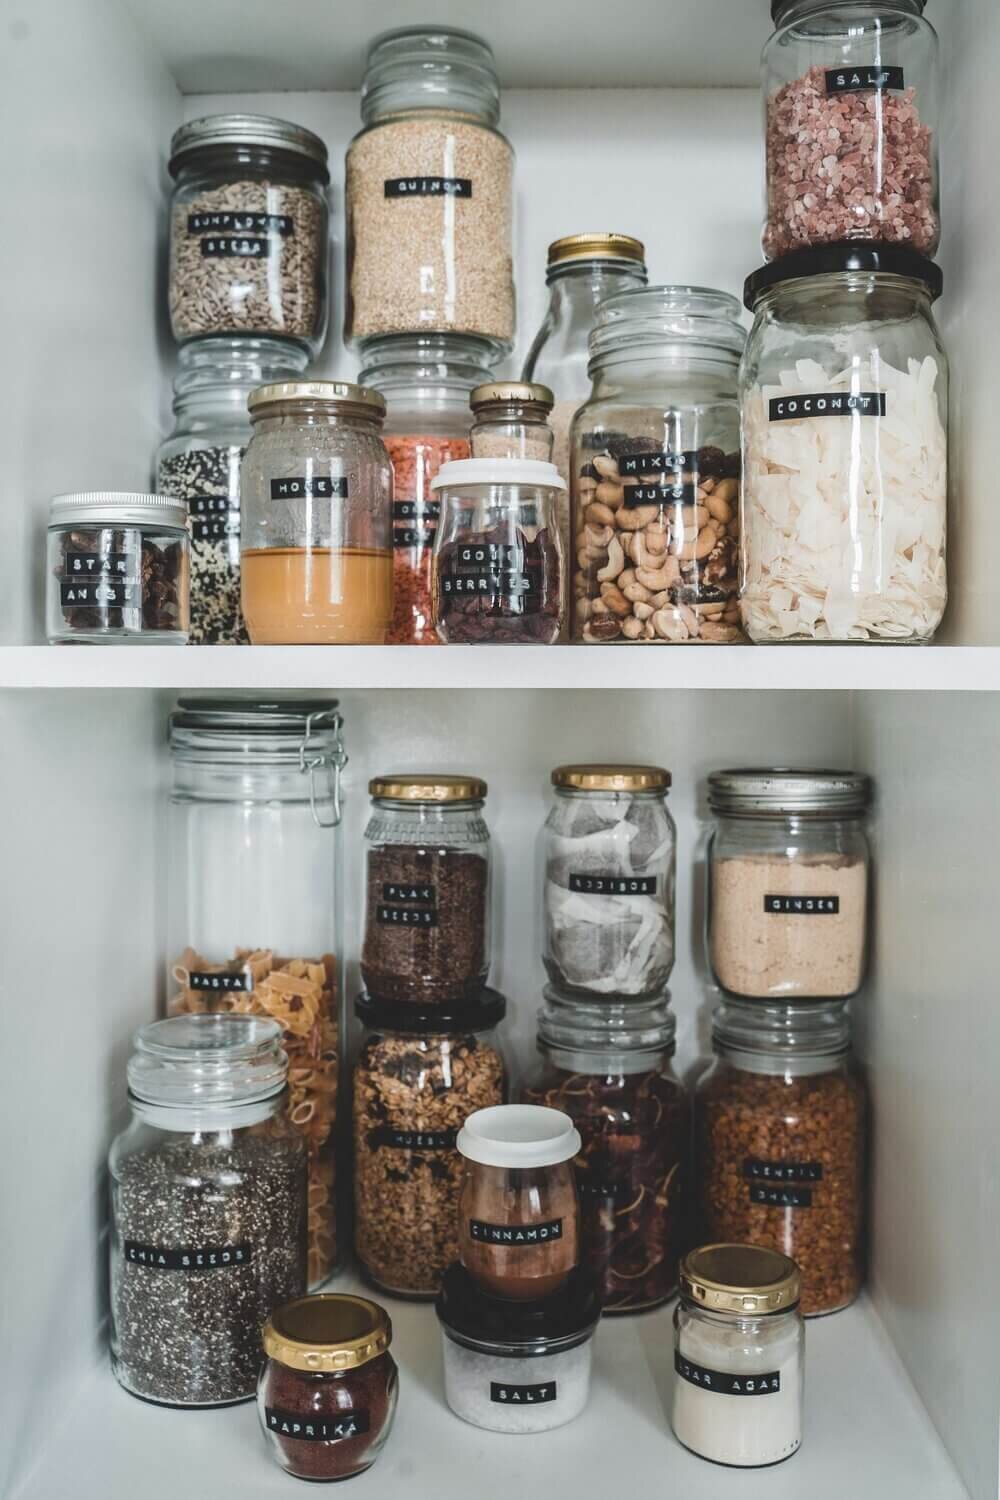 Wall Mount Spice Rack Organize Spice Shelf Seasoning Organizer Spice Storage